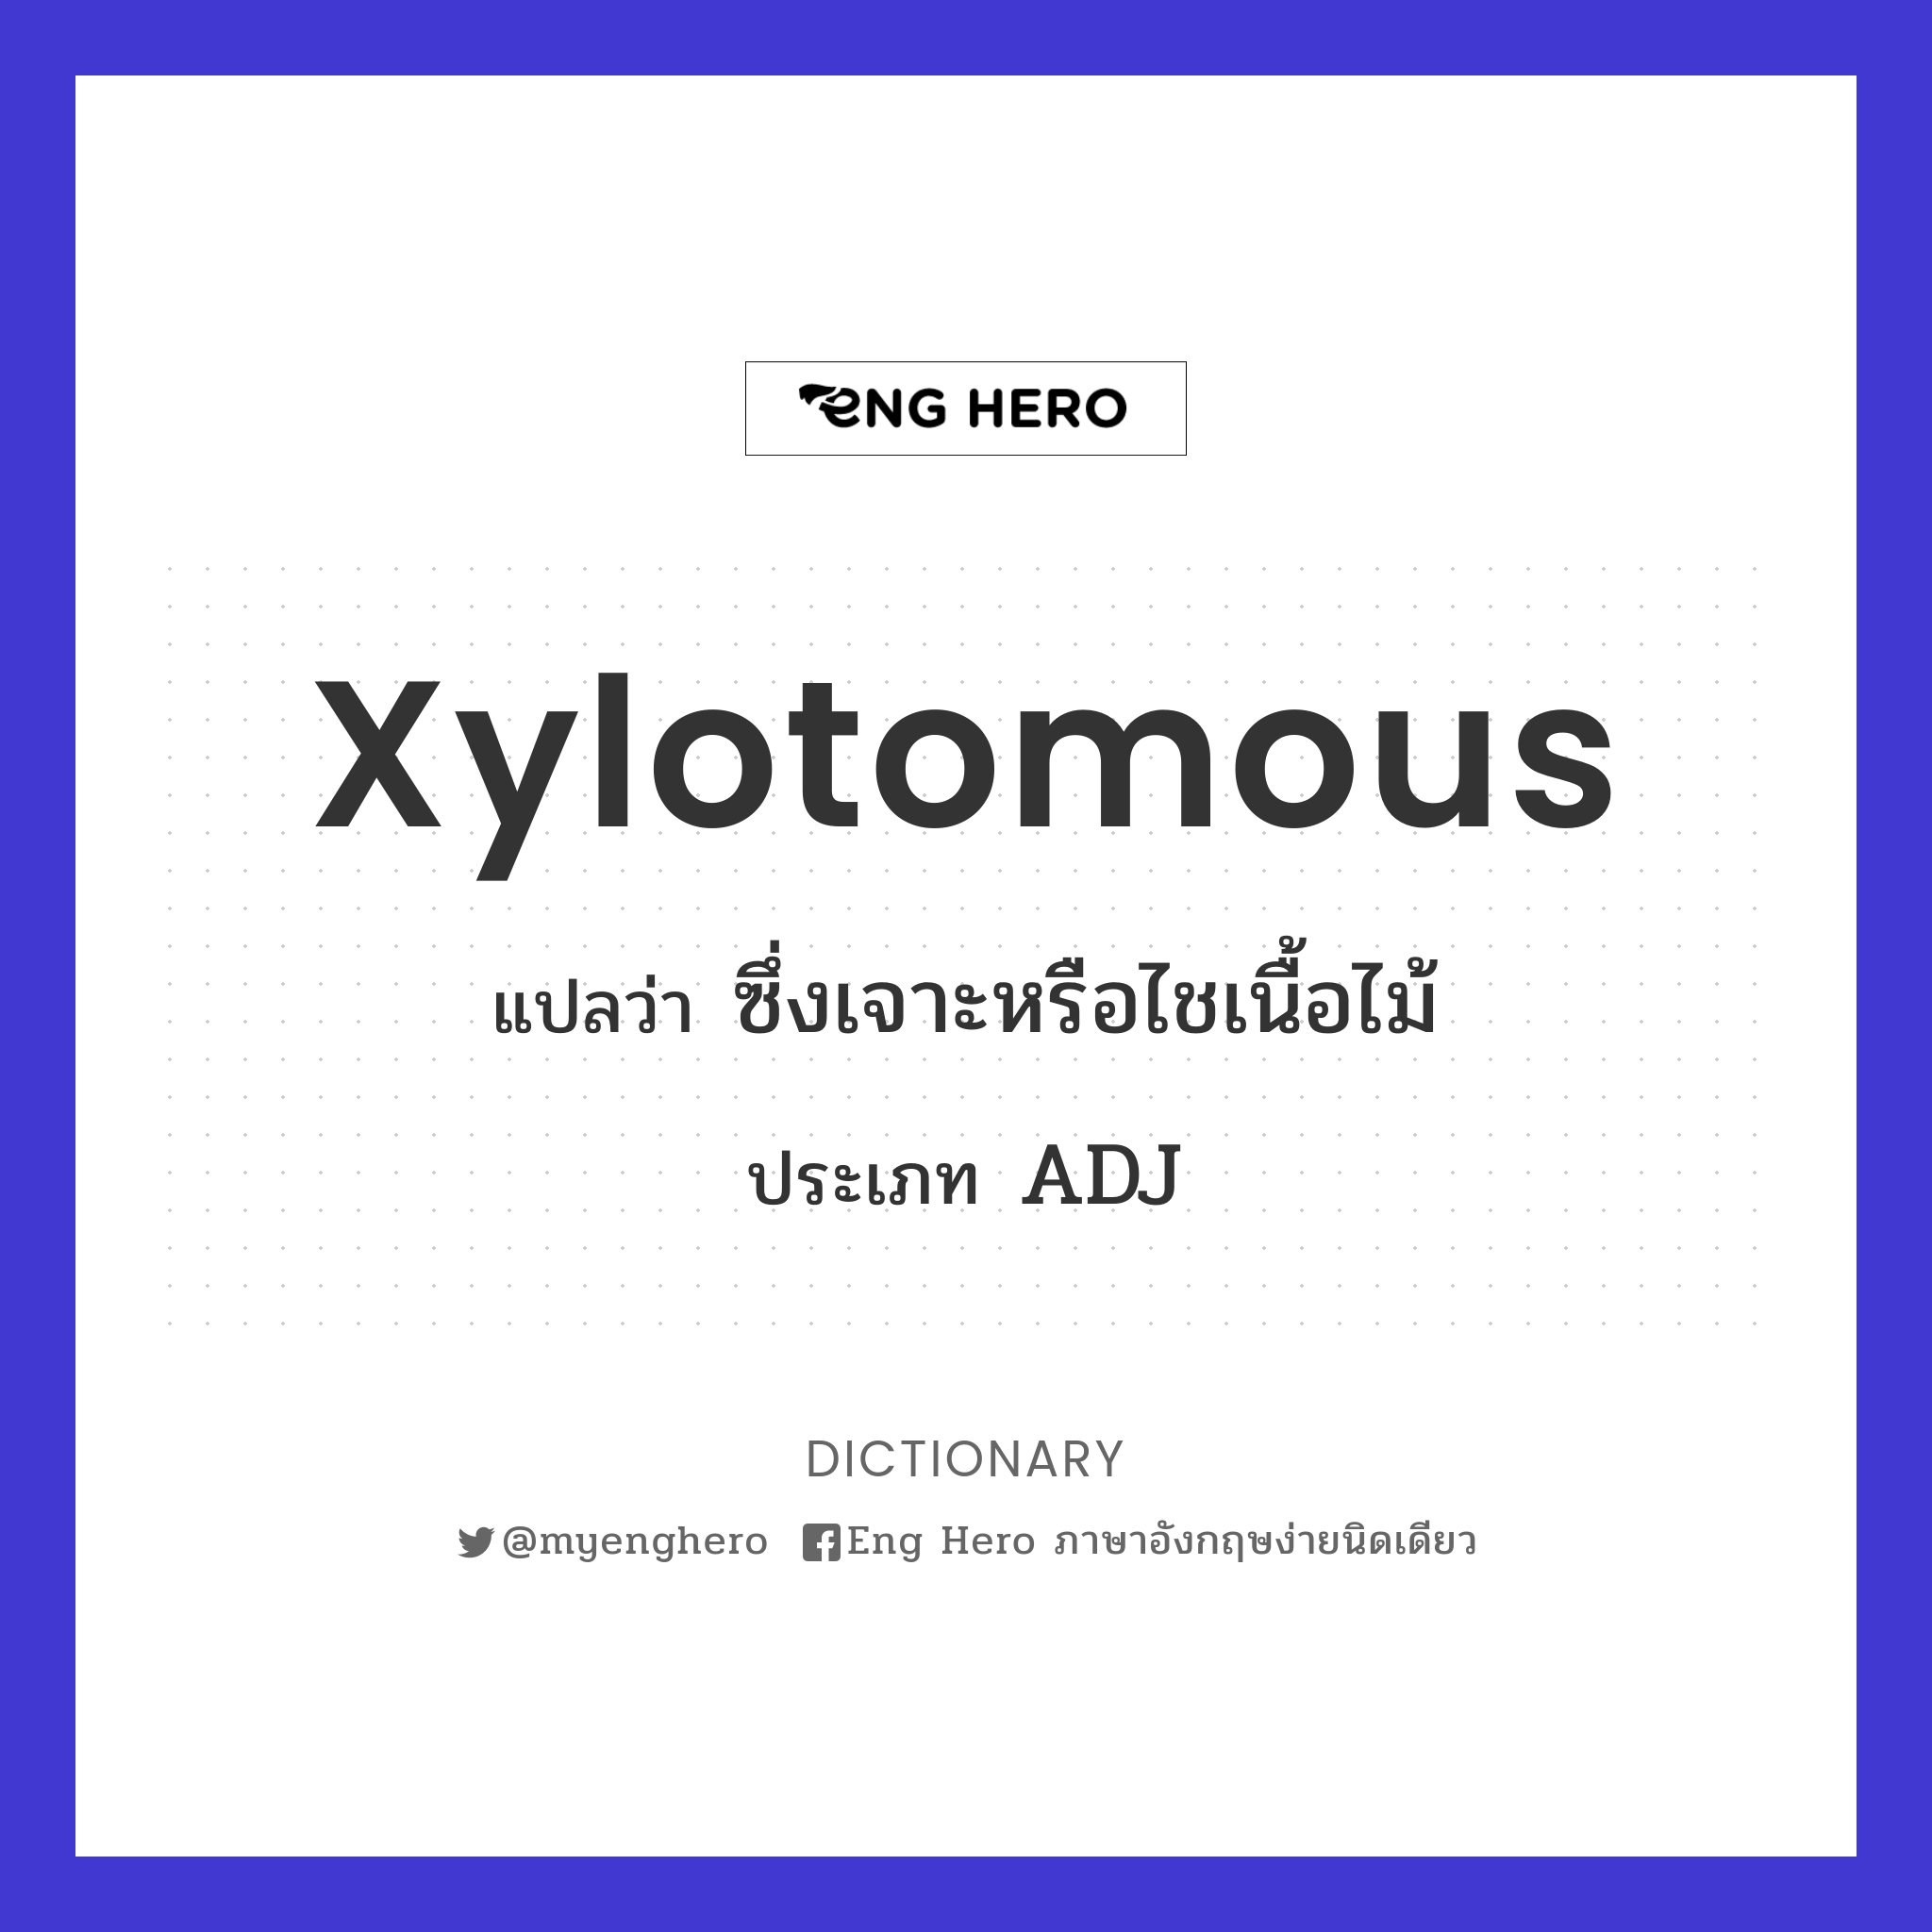 xylotomous